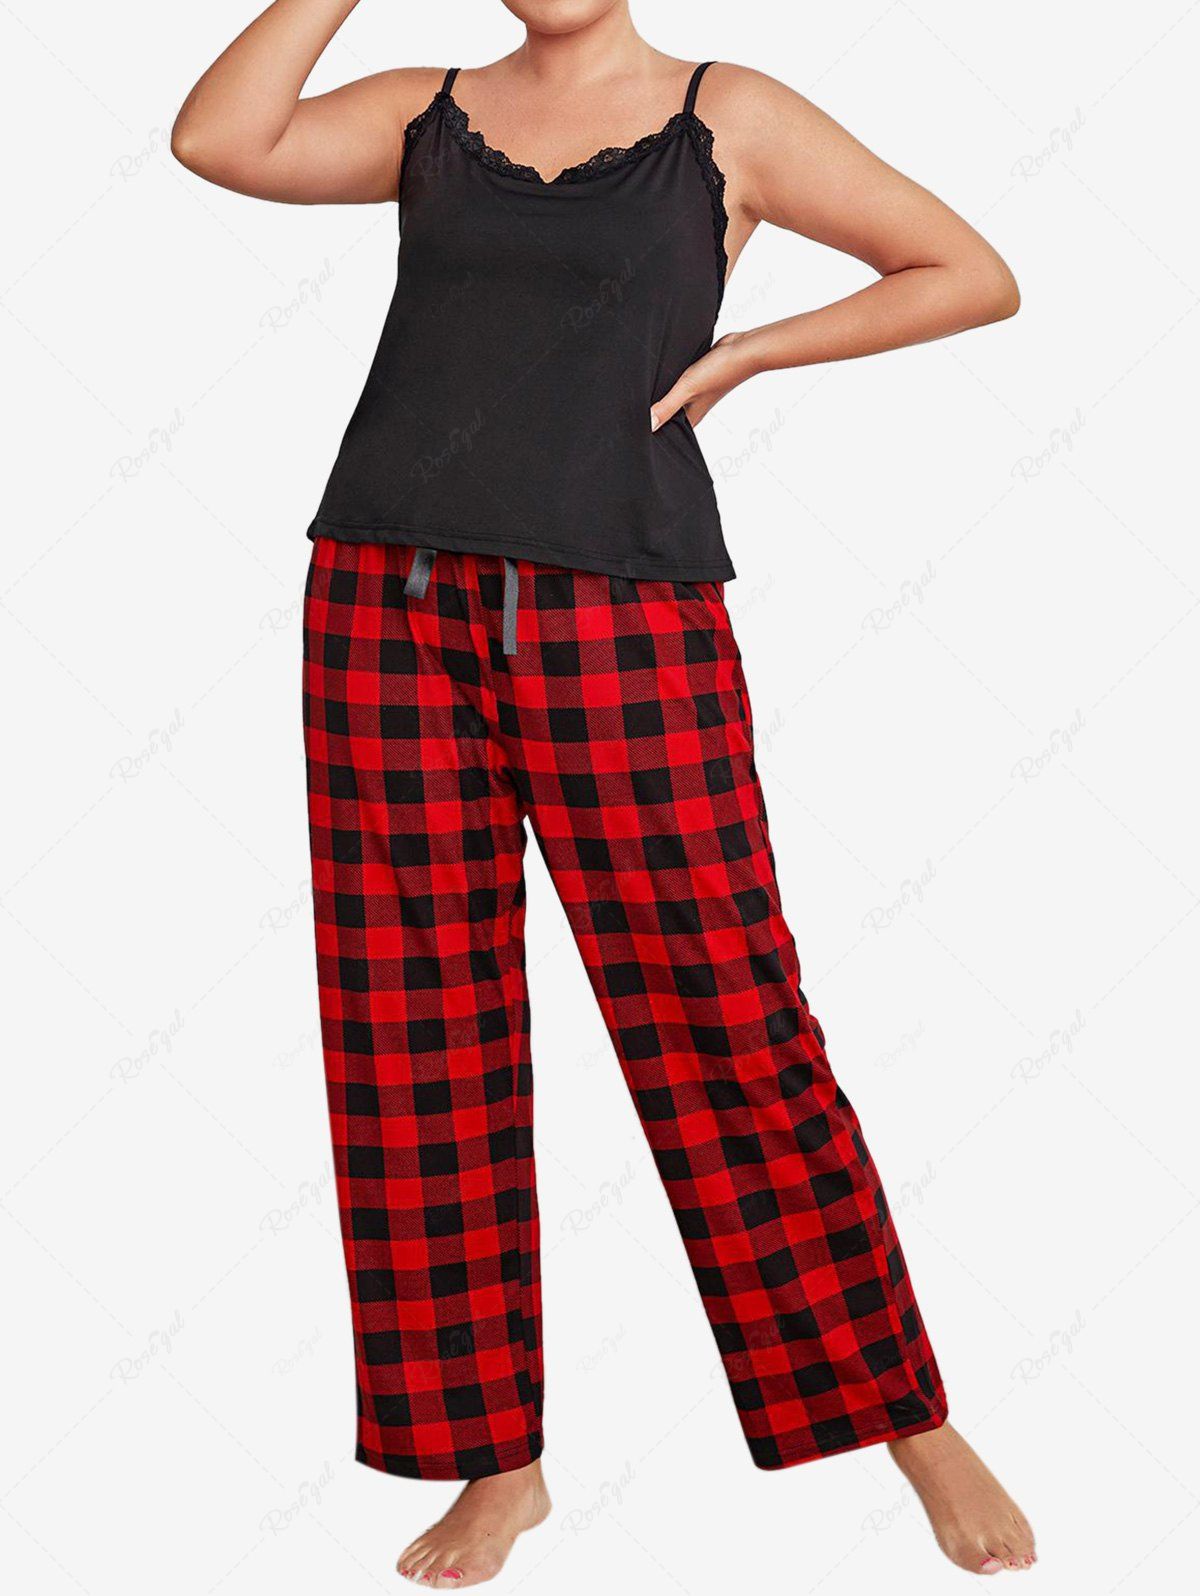 Trendy Plus Size Lace Trim Backless Plaid Pants Pajamas Set  